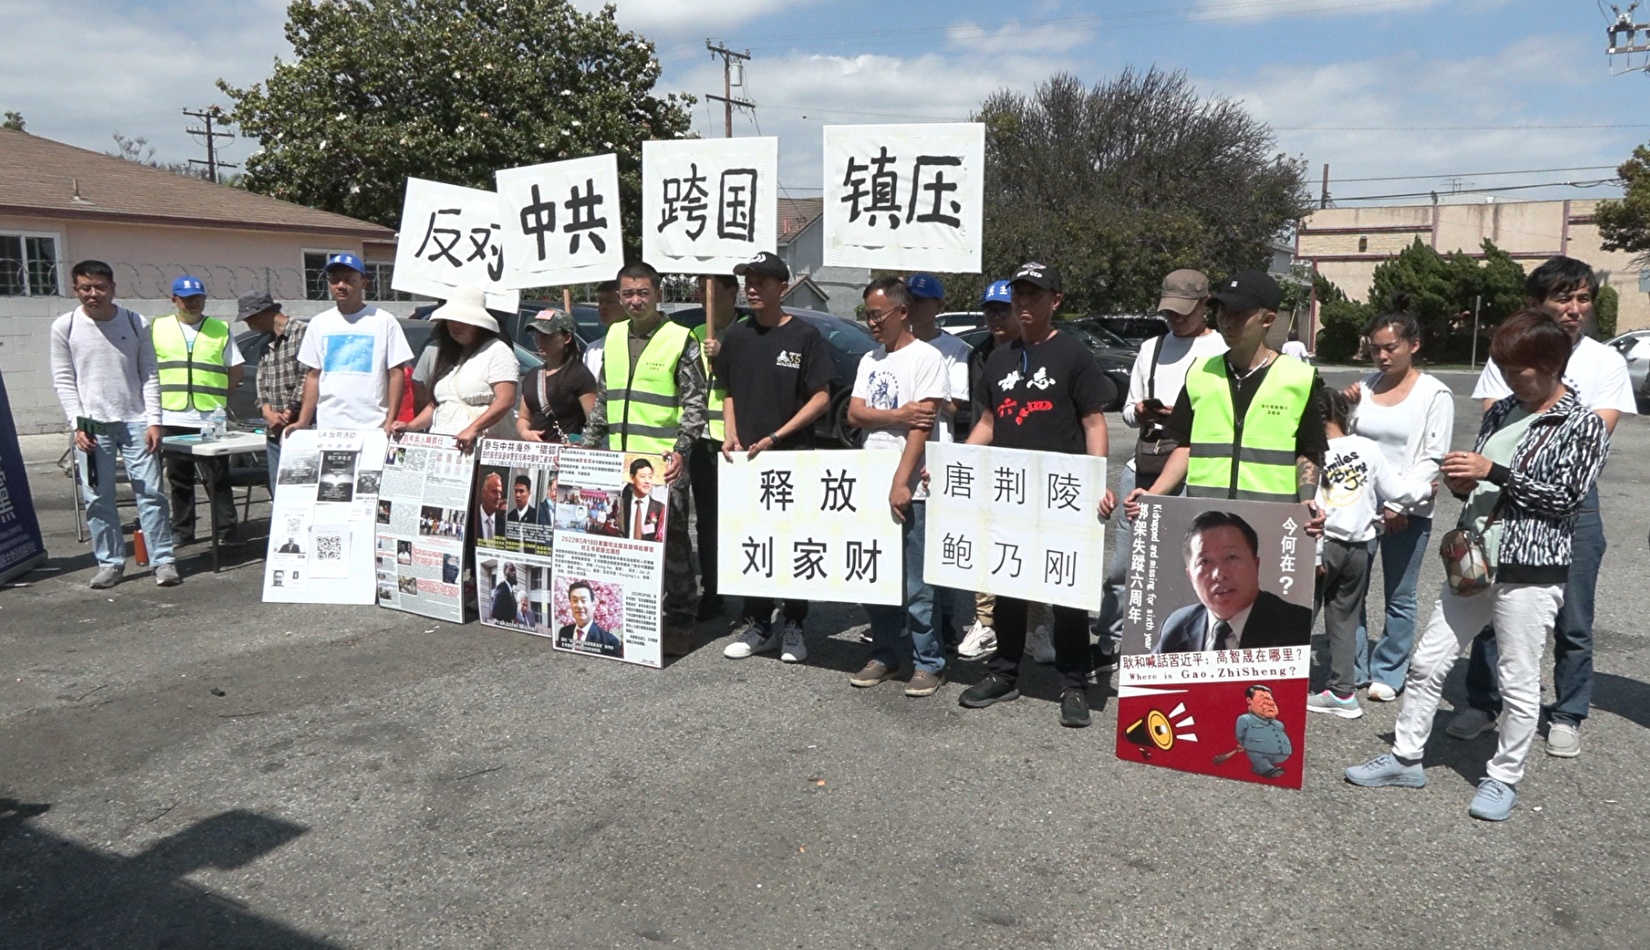 洛城華人抗議中共跨國鎮壓 教公眾識別應對之法